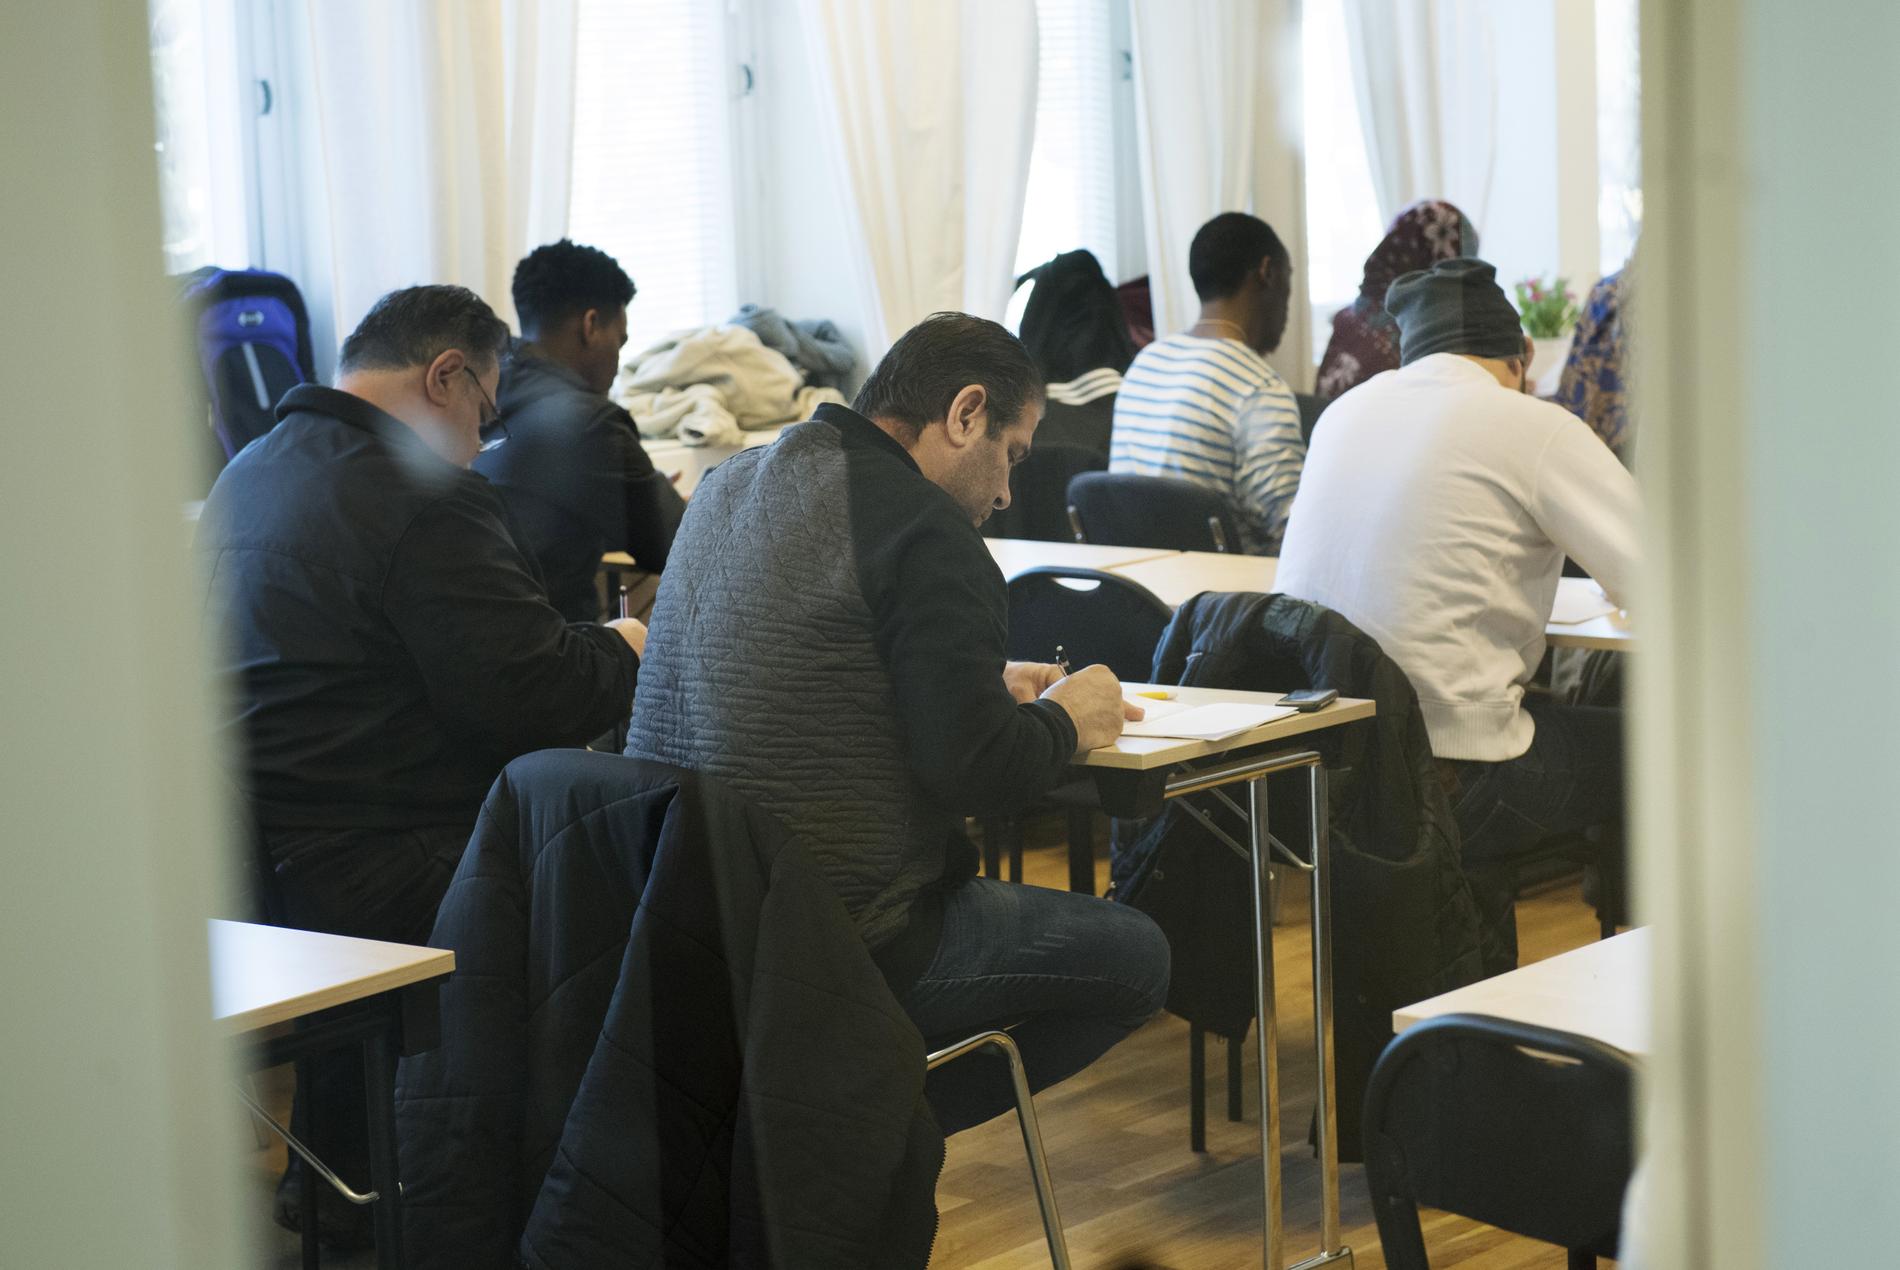 Asylsökande lär sig svenska på ett utbildningscenter för Sfi, svenska för invandrare, i Täby 2017.